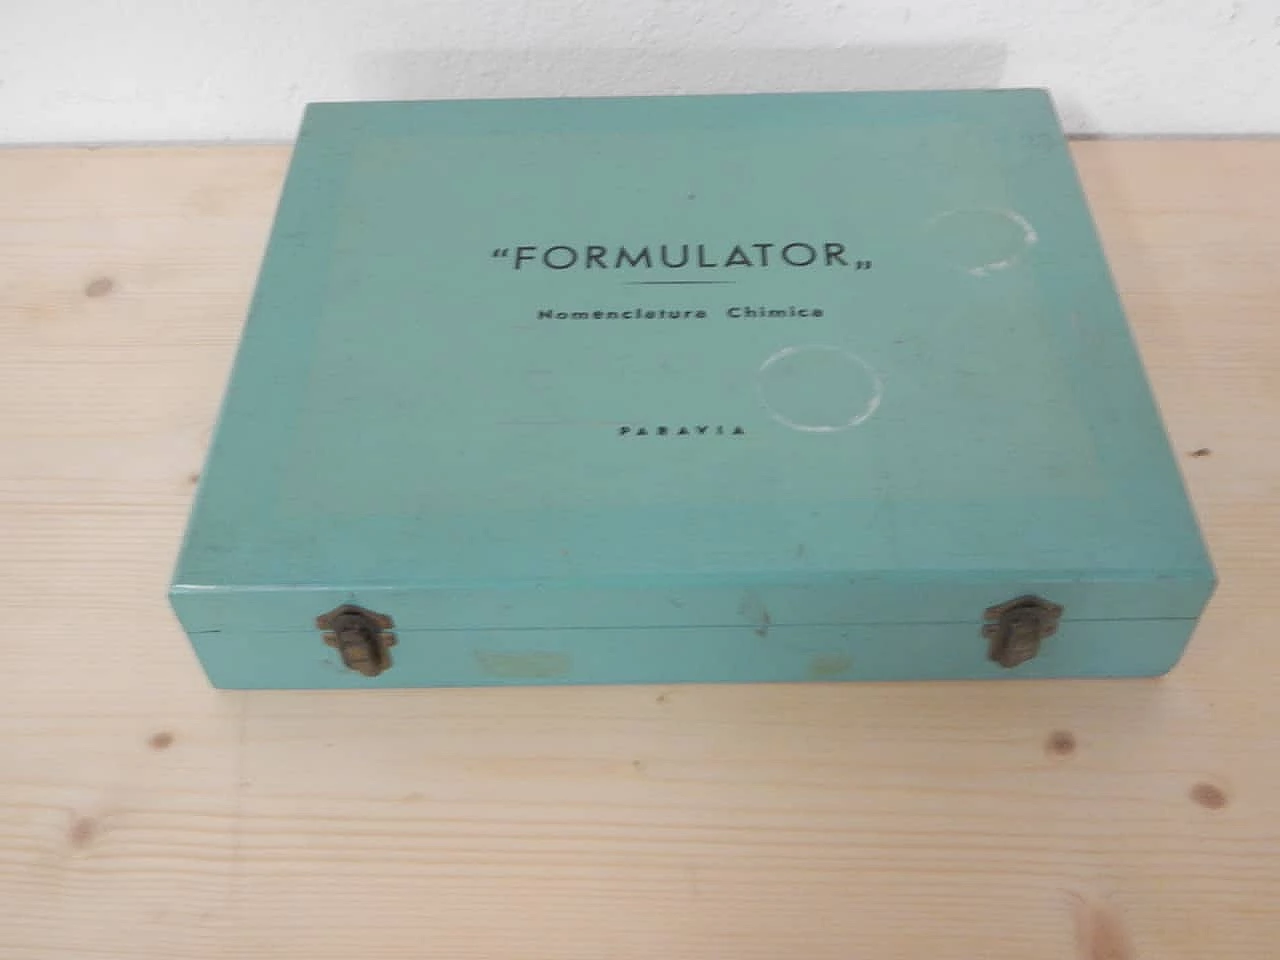 Cassetta di nomenclatura chimica Formulator per Paravia, 1948 1